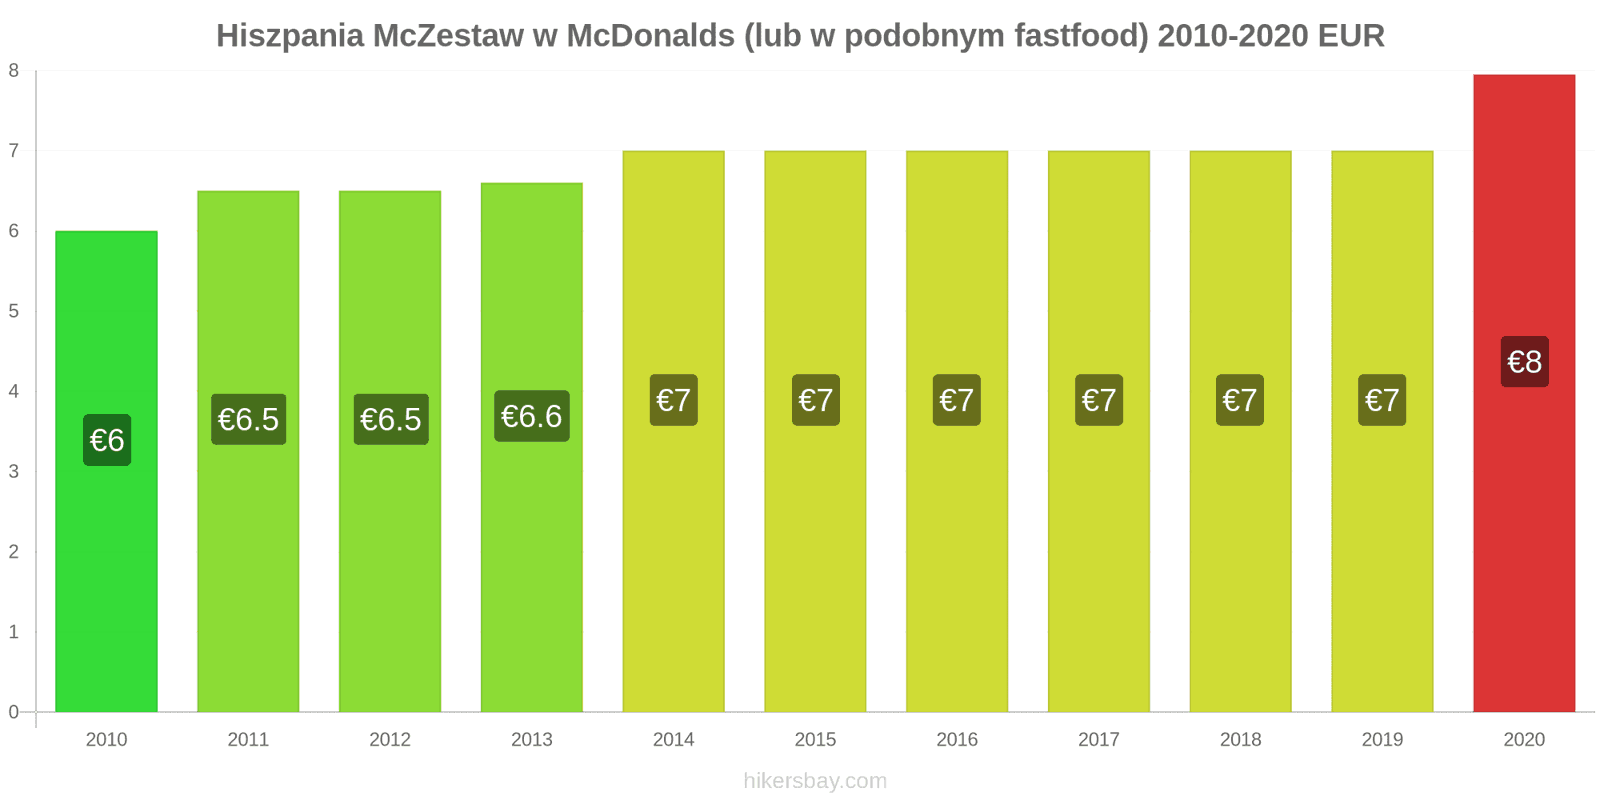 Hiszpania zmiany cen McZestaw w McDonalds (lub w podobnym fastfood) hikersbay.com